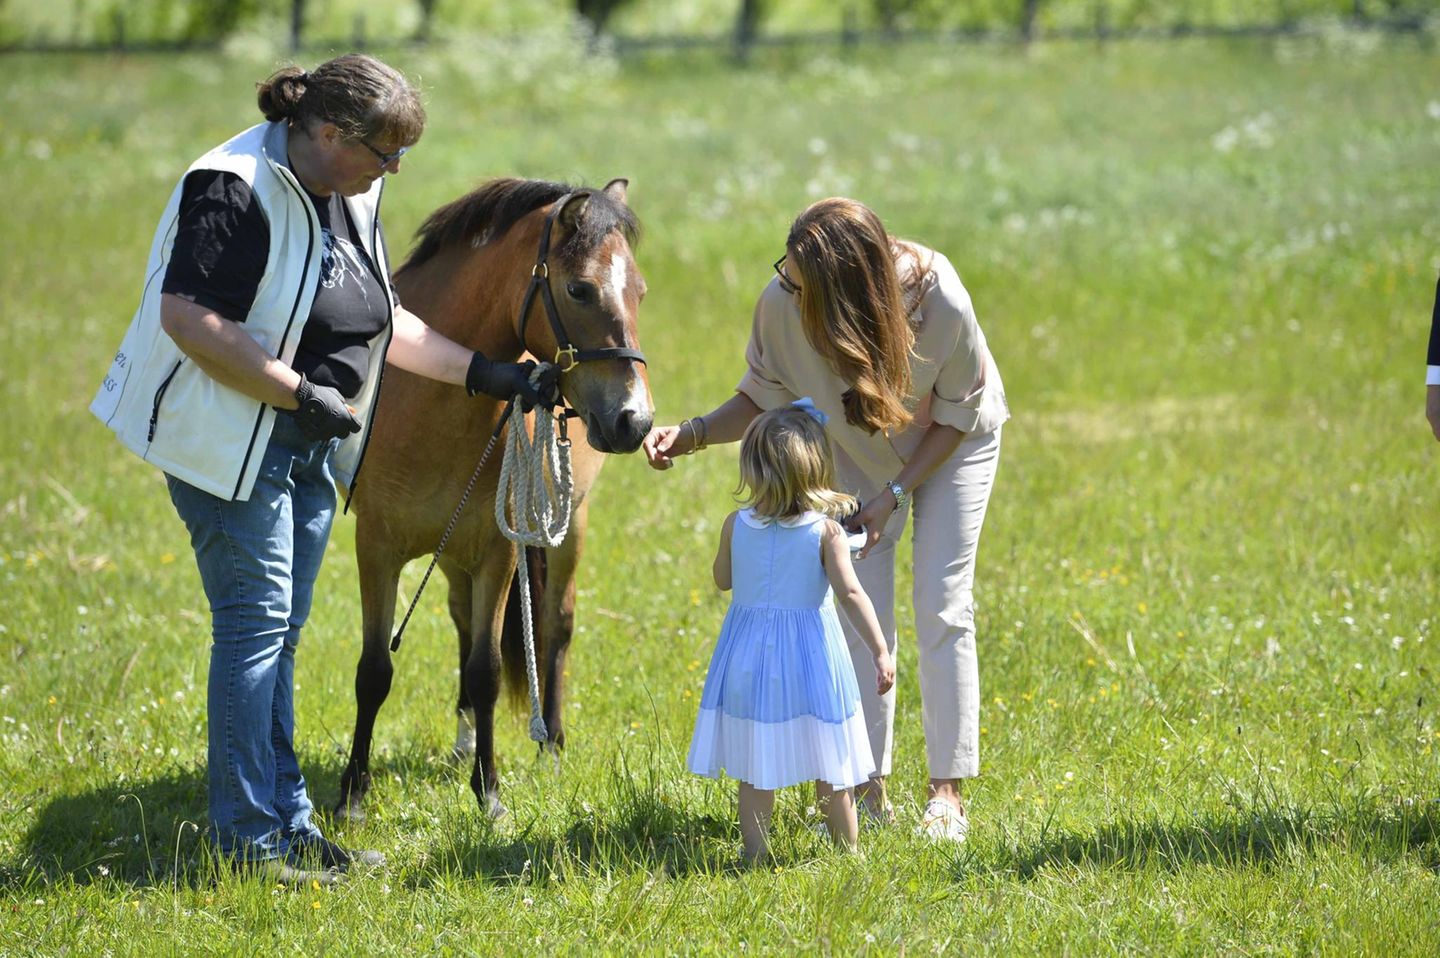 "Guck mal, das ist Haidi!" - Prinzessin Madeleine stellt ihrer Tochter ihr Taufgeschenk vor, das Gotland-Pony Haidi.